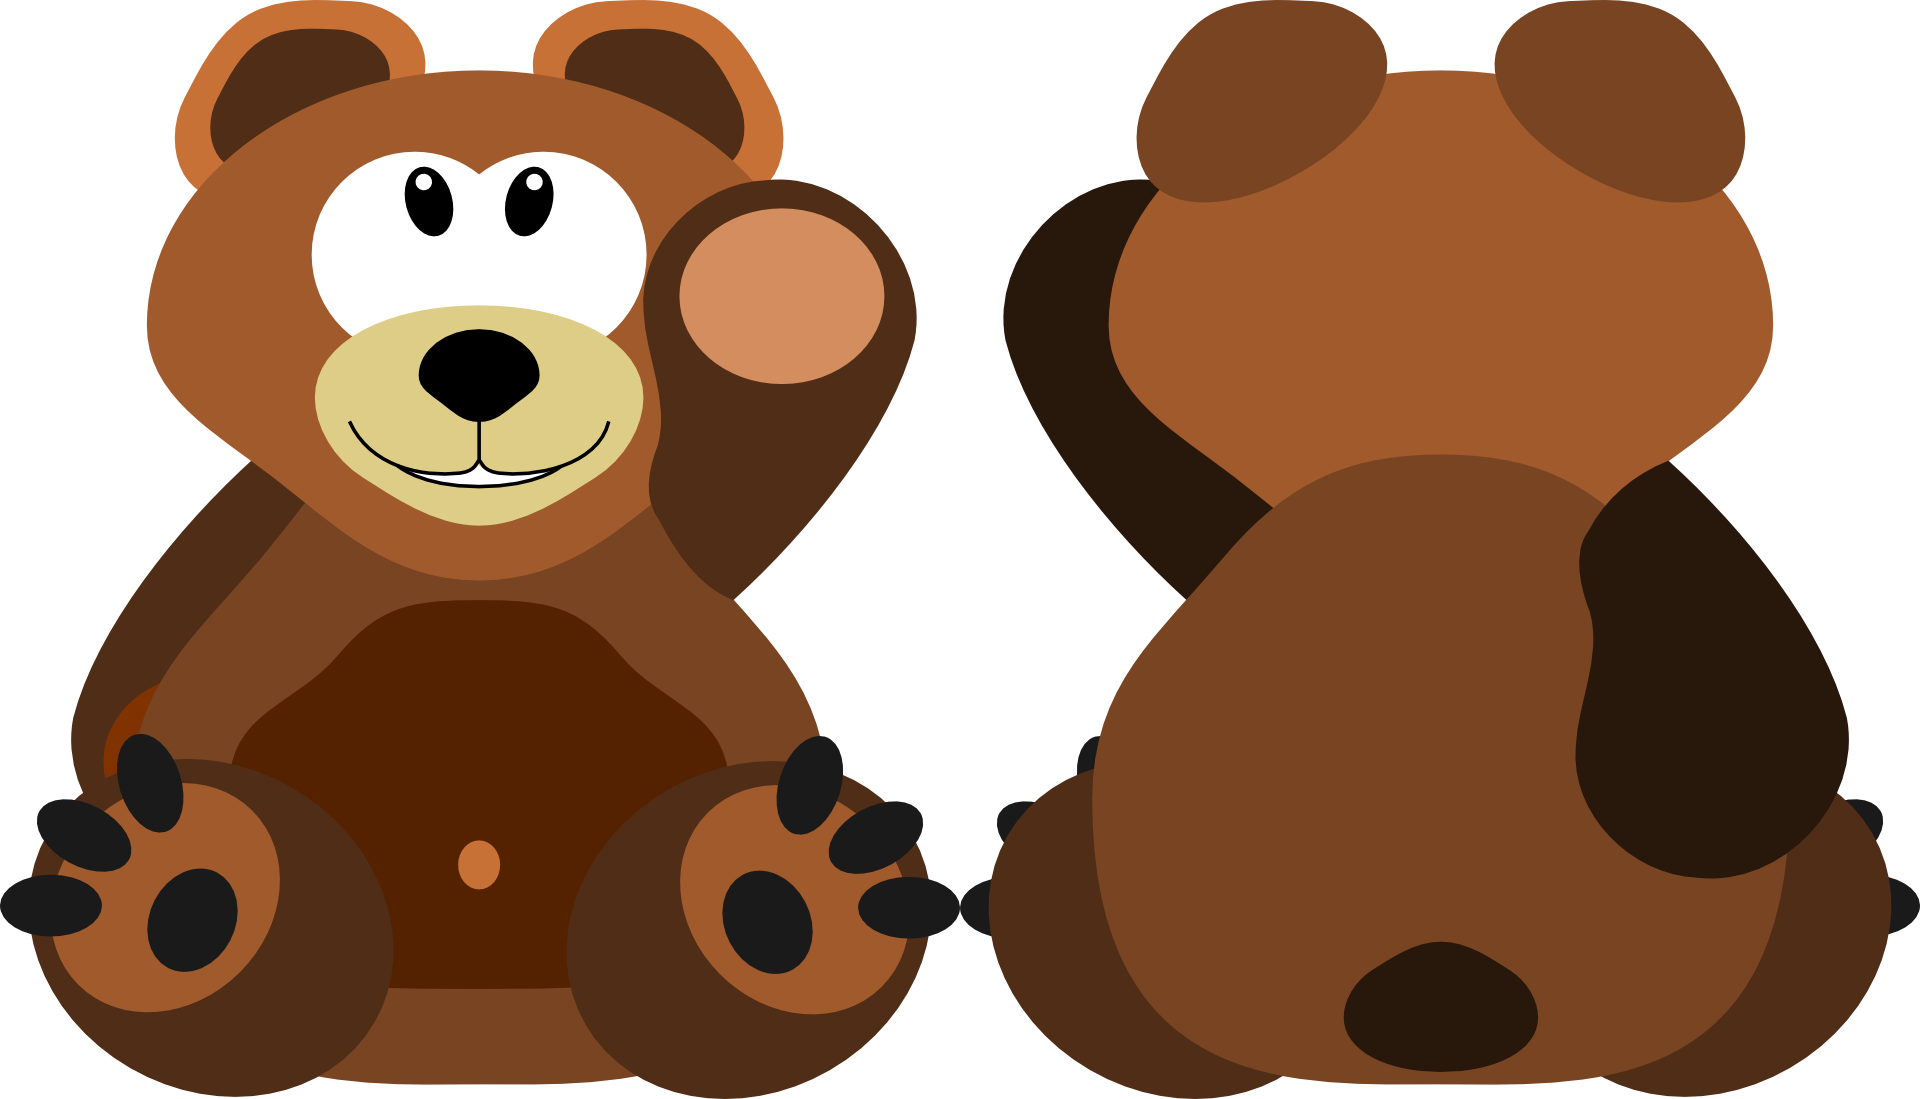 Teddy Bear Stuffed Animals & Cuddly Toys Clip Art - Teddy Bear Stuffed Animals & Cuddly Toys Clip Art (1920x1099)